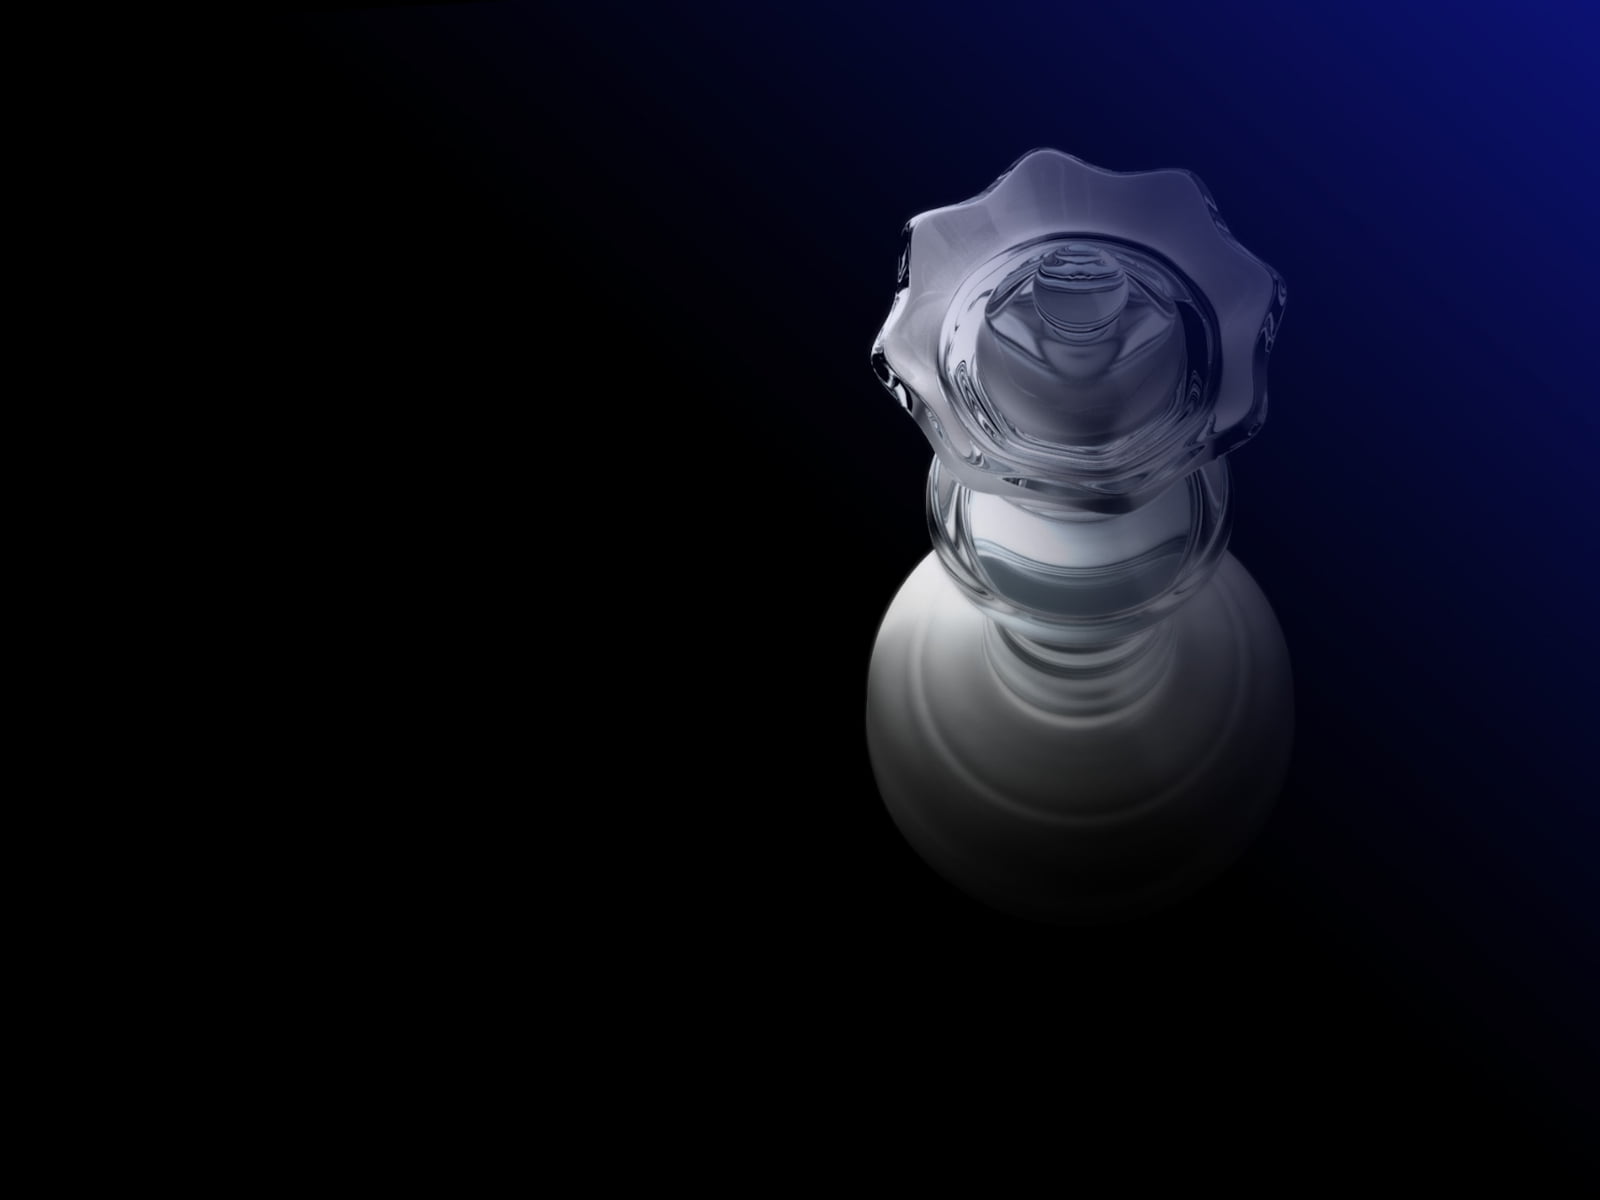 Peça de Rei de um jogo de xadrez, em um fundo escuro.